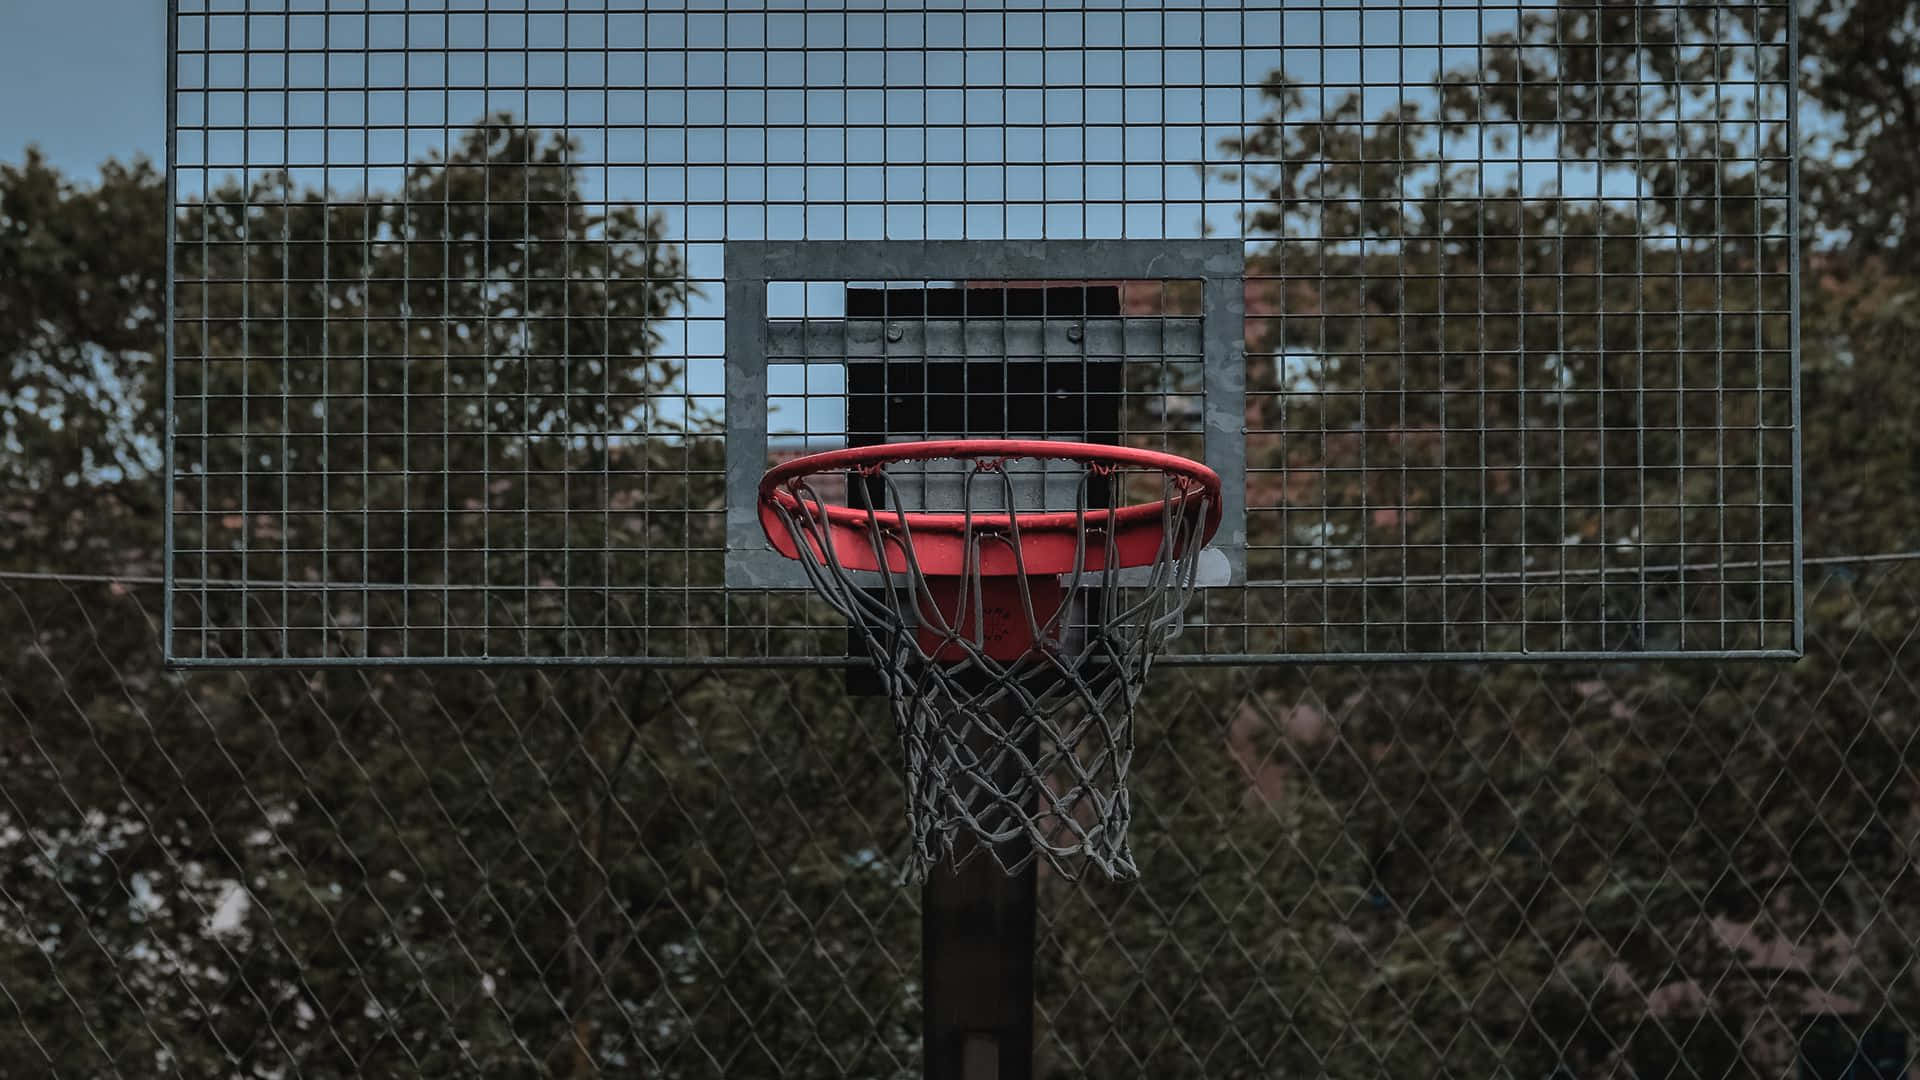 Ettactionfyllt Basketbollspel